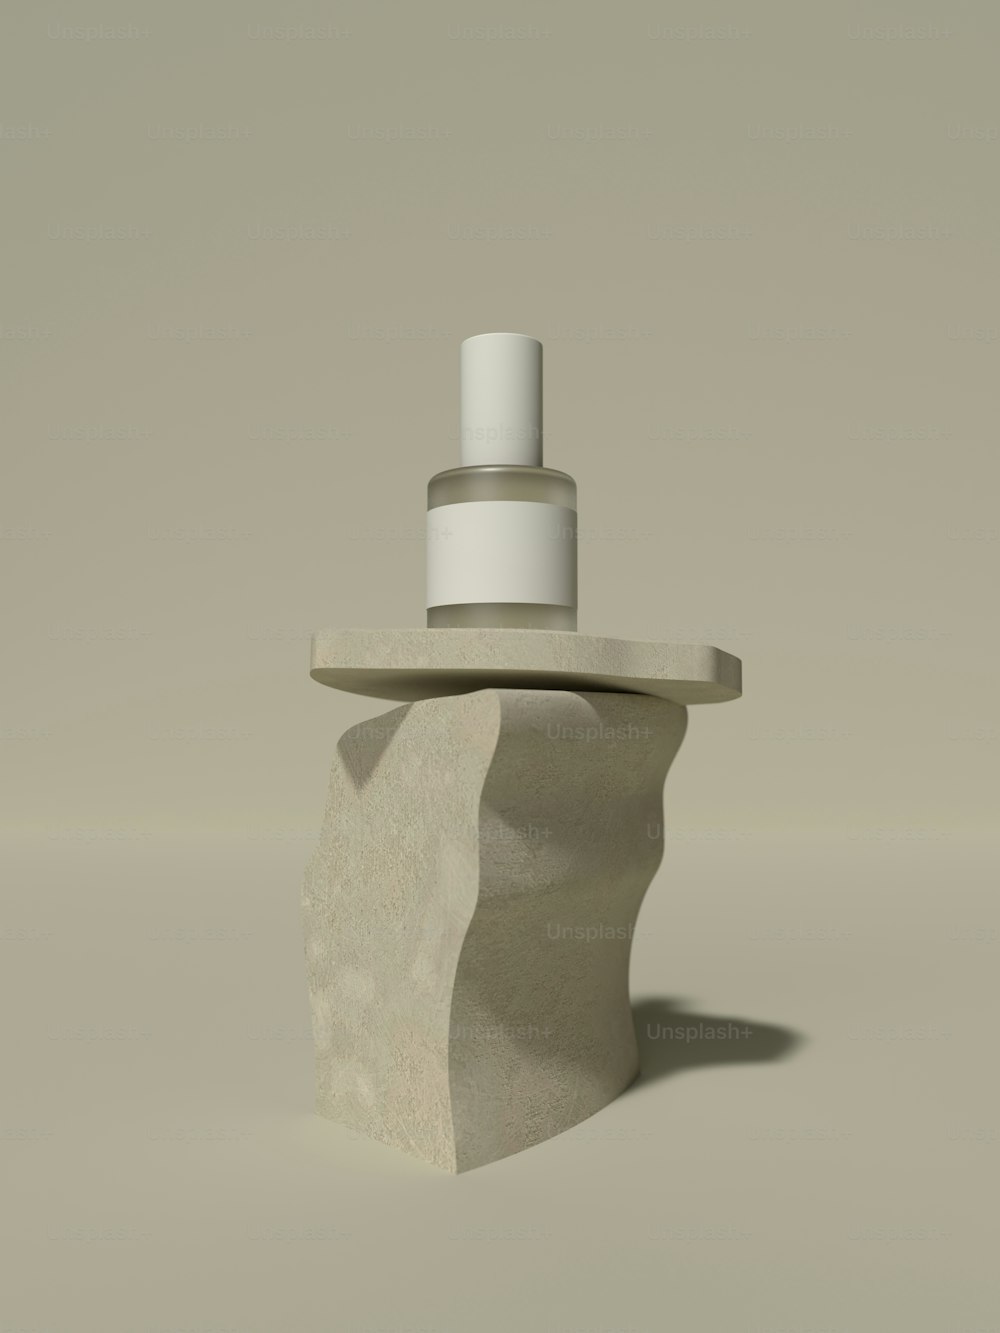 un objet cylindrique blanc avec un capuchon blanc sur une surface blanche